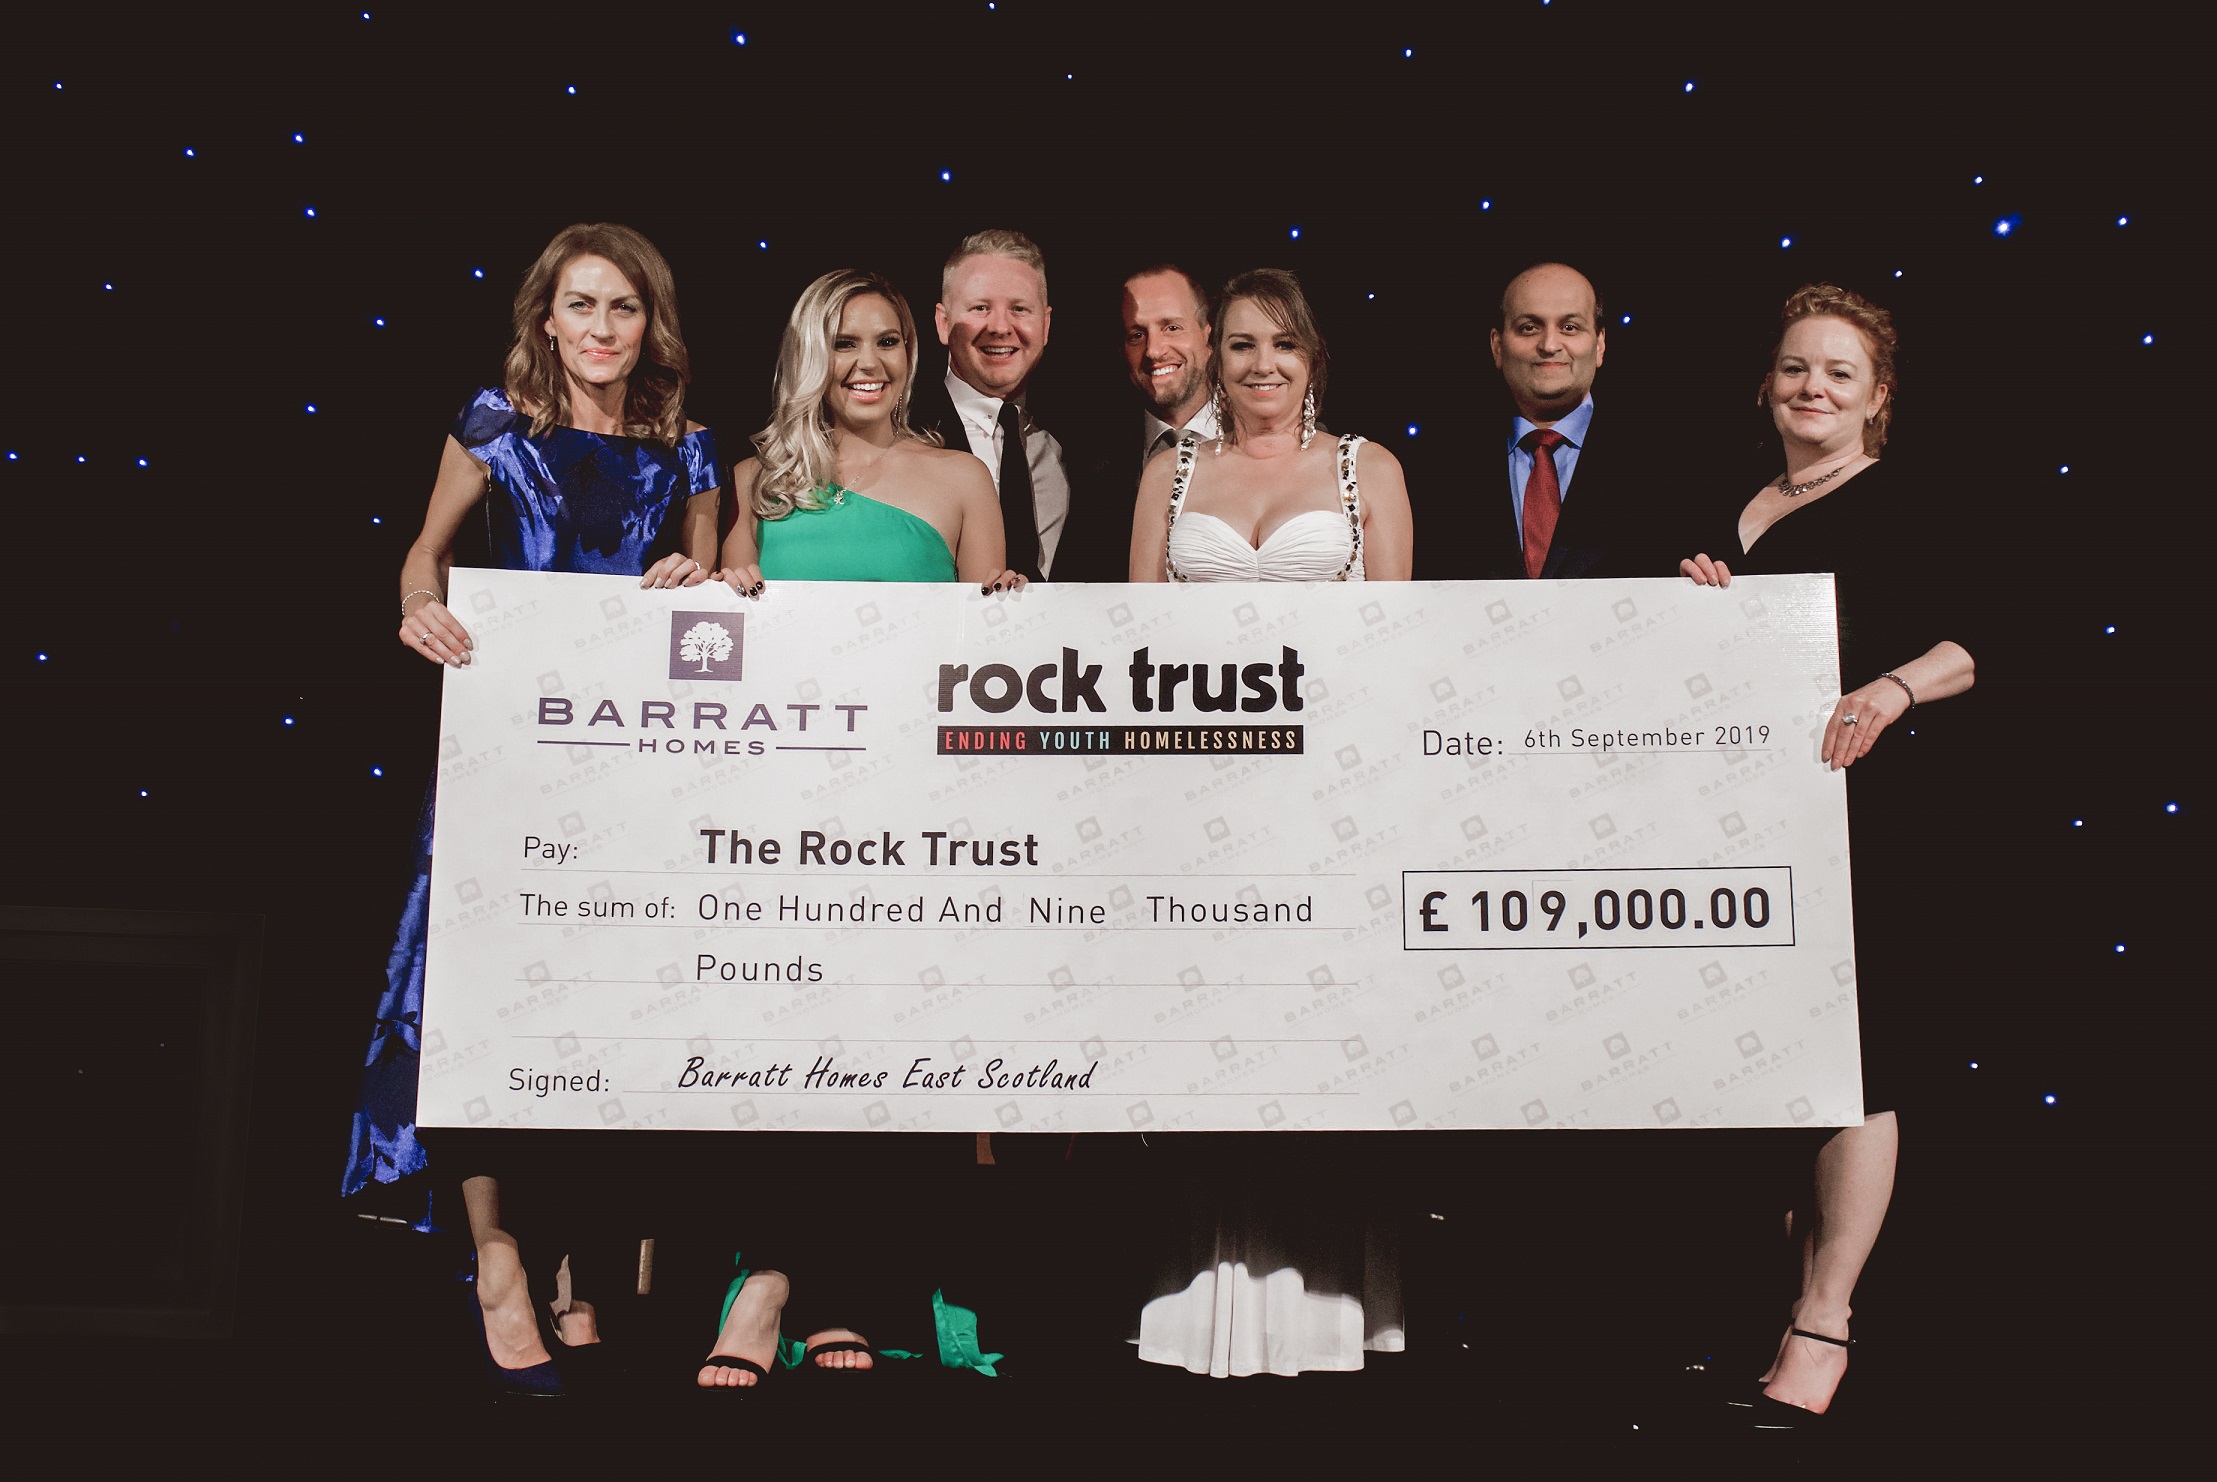 Barratt Homes East raises over £80,000 for homelessness charity